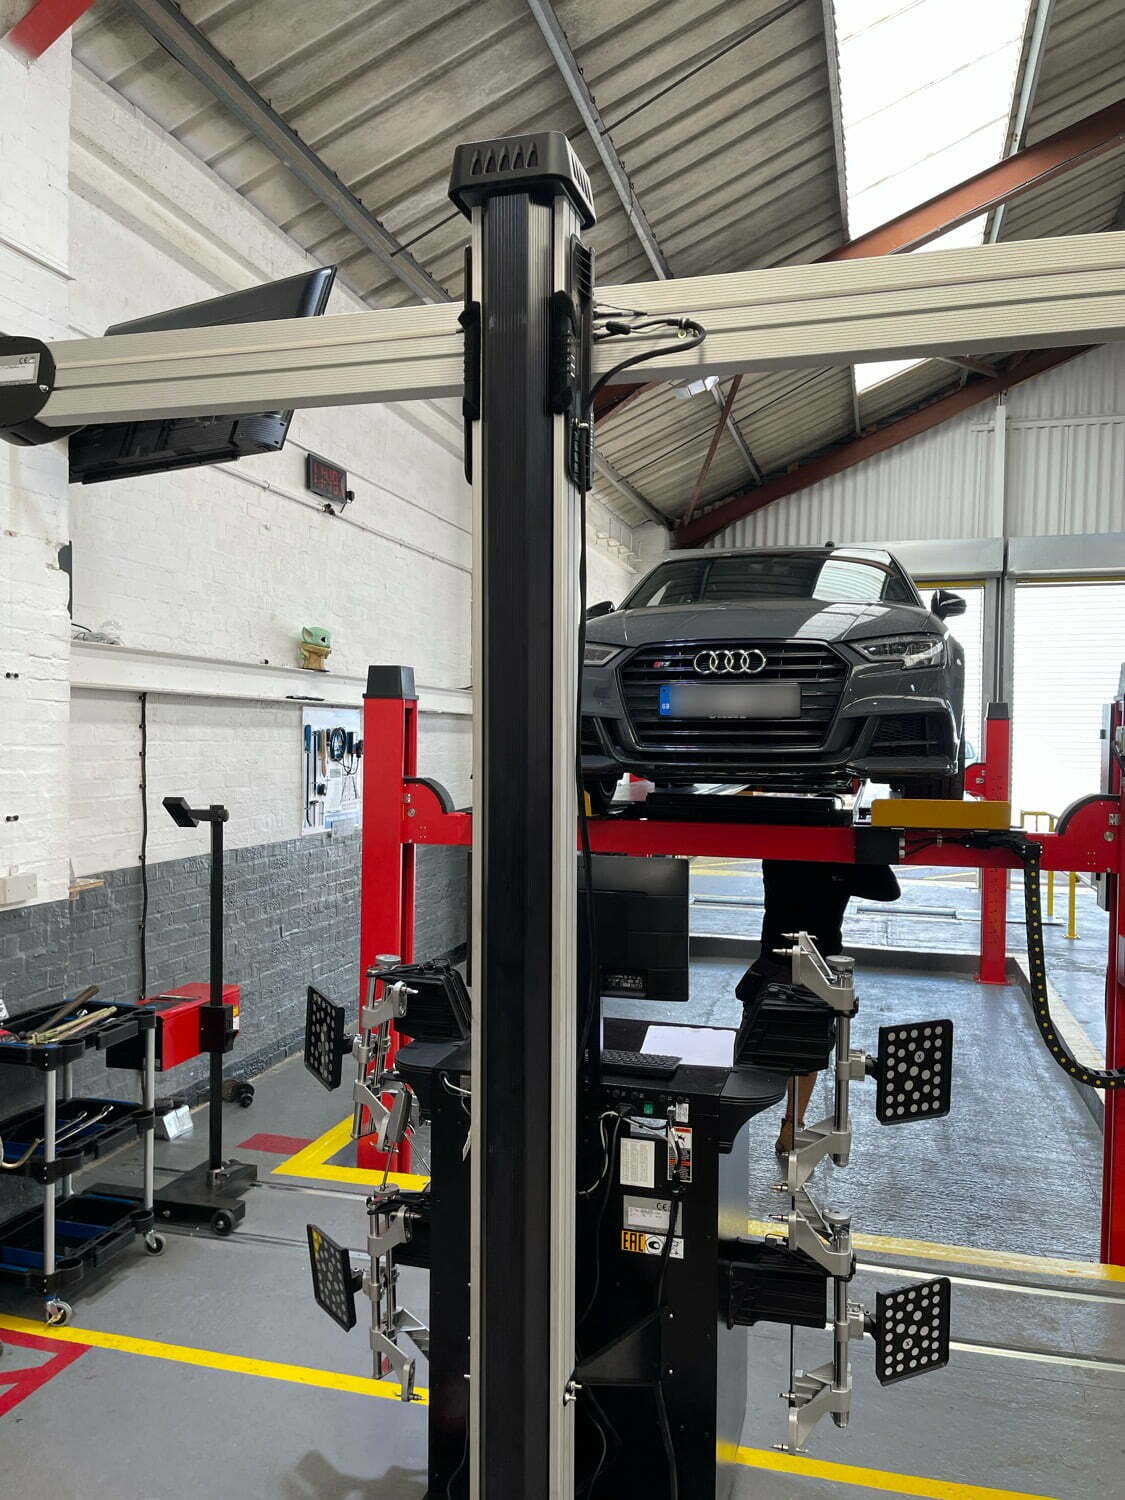 Car Audi on MOT test ramp at Longton MOT Test Garage in Stoke-on-trent